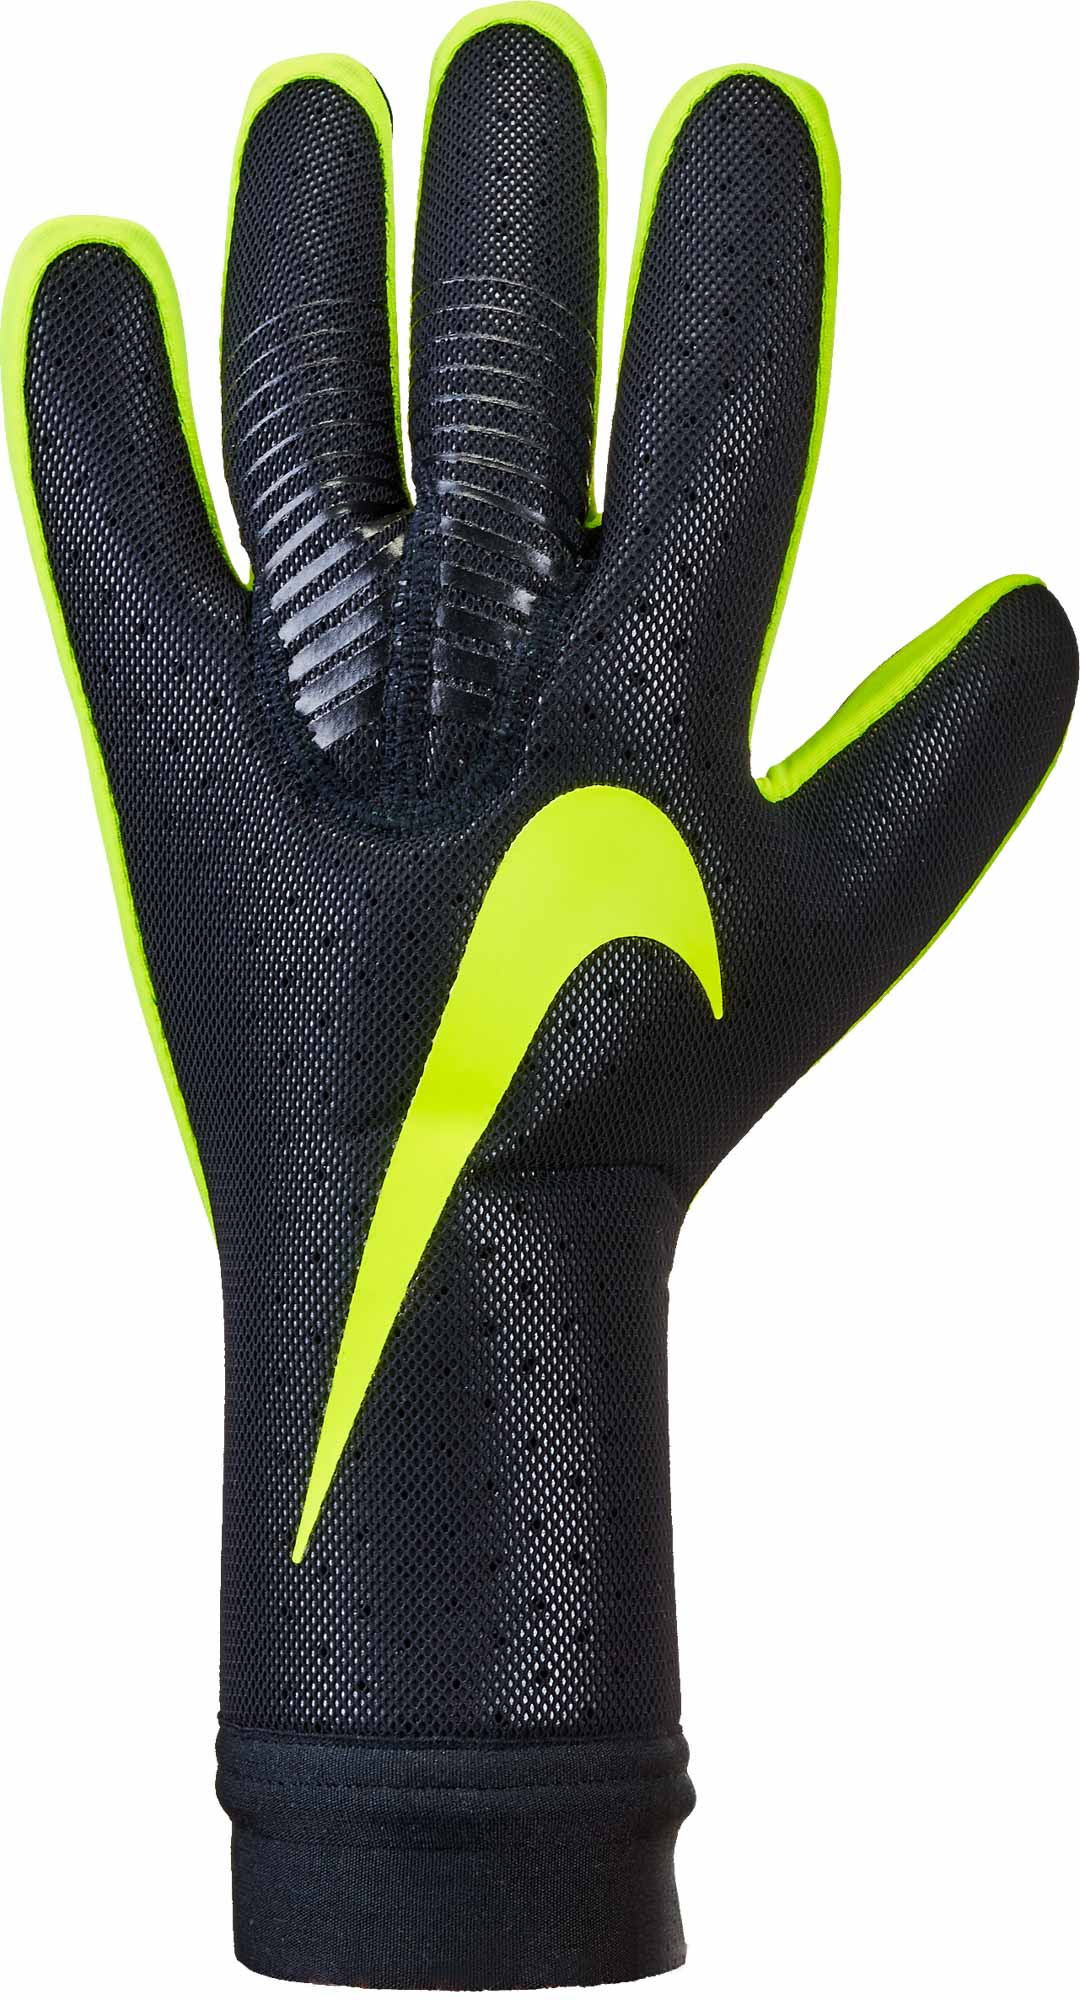 nike vapor touch goalkeeper gloves